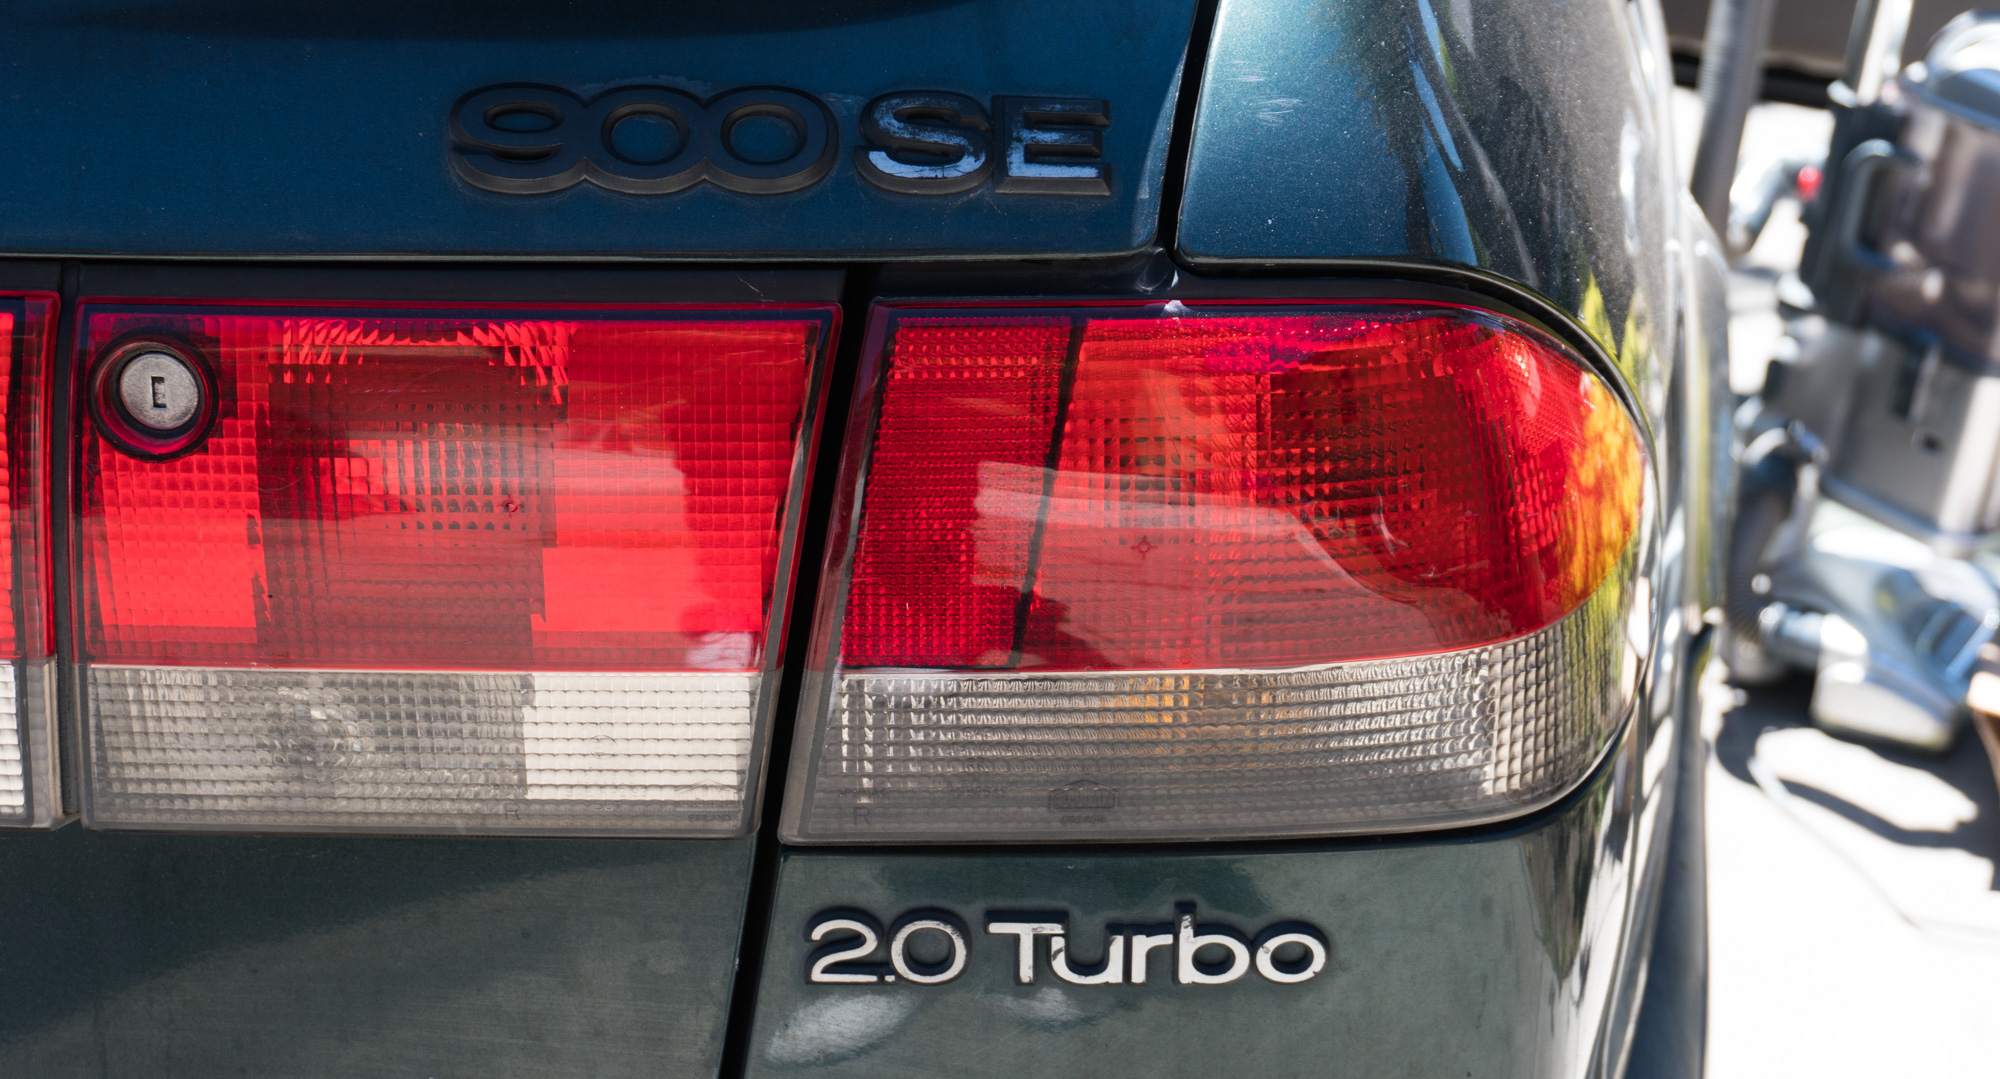 Saab Story Part 2: Keep it 900 (Turbo)